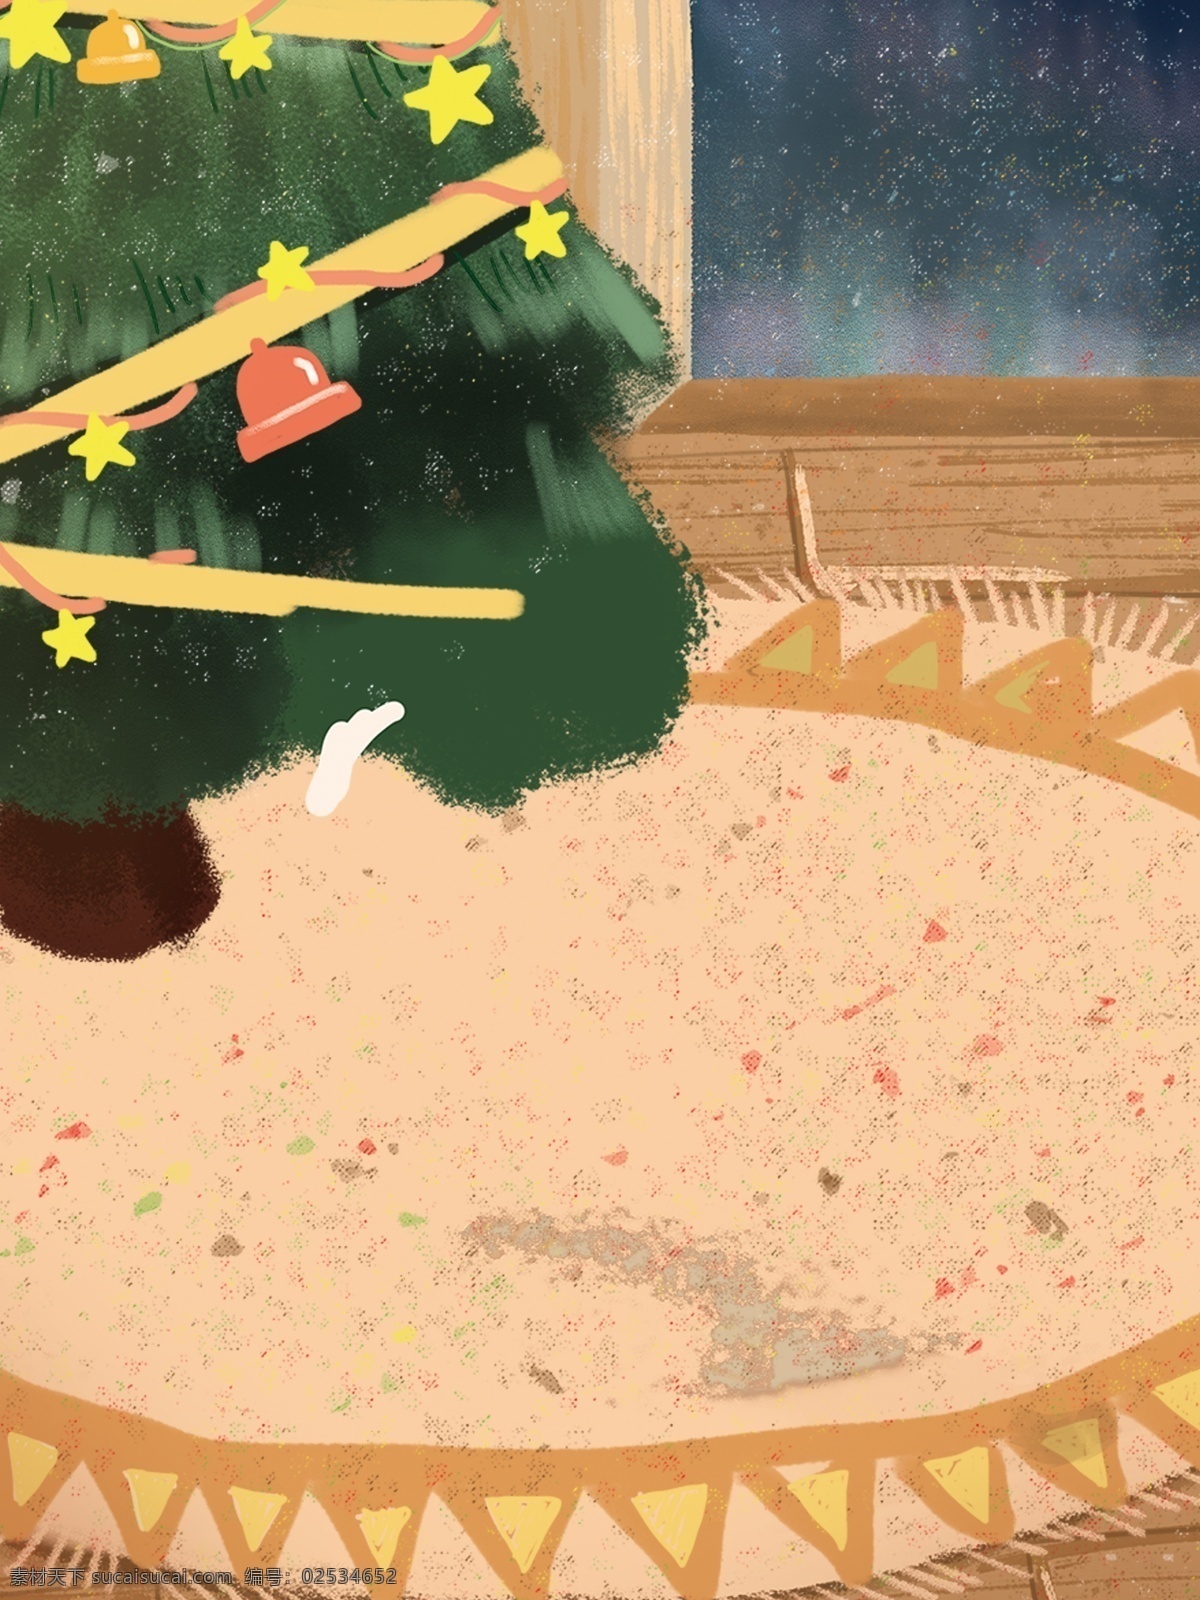 彩绘 圣诞树 装饰 背景 星星 铃铛 地毯 圣诞背景 广告背景 彩绘背景 促销背景 背景展板图 背景图